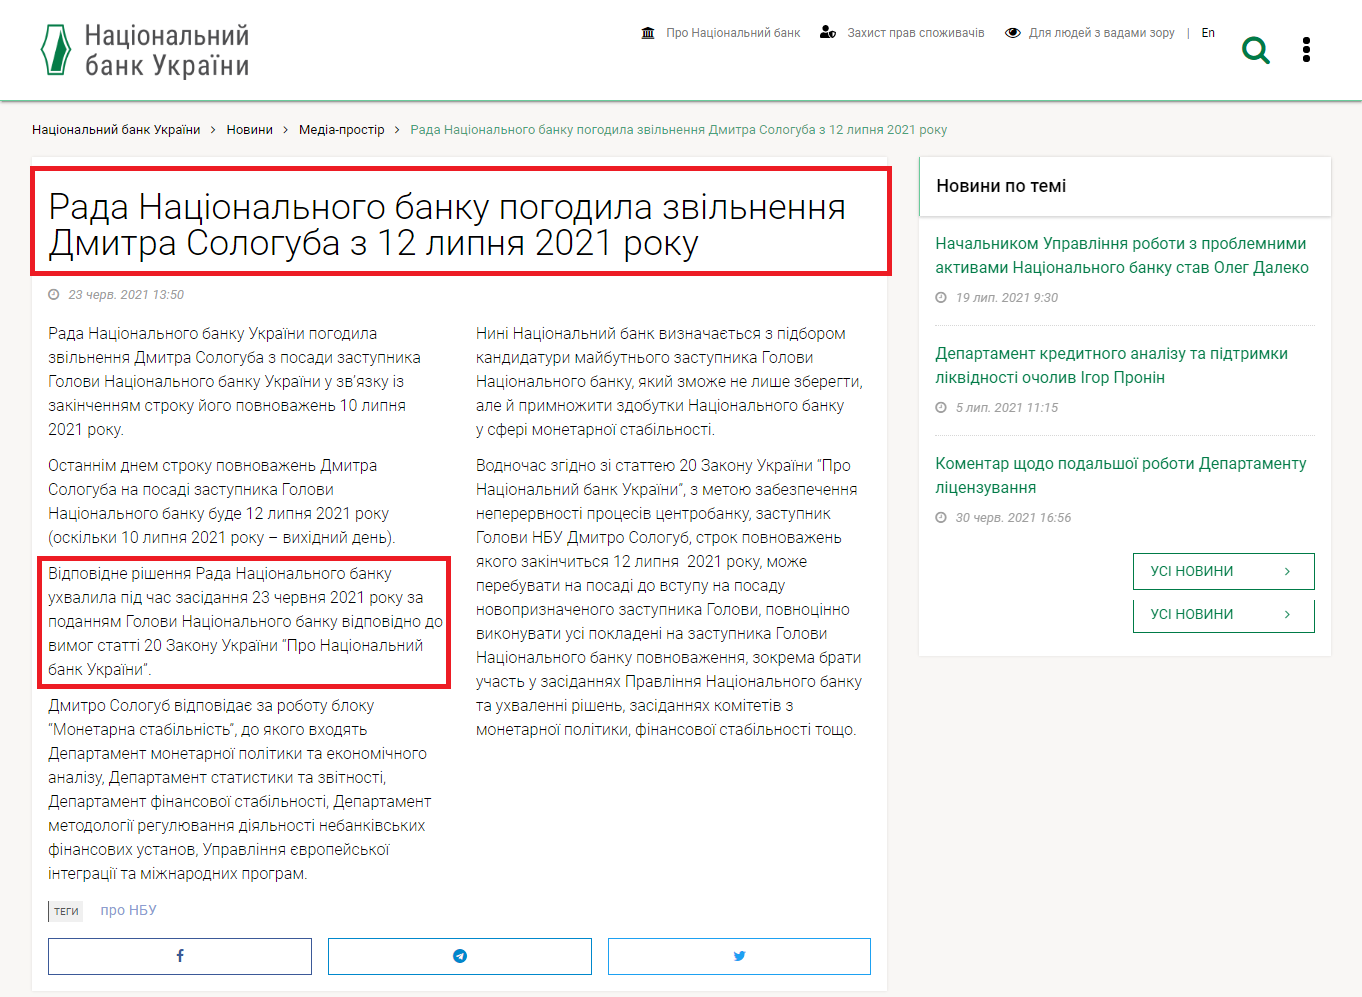 https://bank.gov.ua/ua/news/all/rada-natsionalnogo-banku-pogodila-zvilnennya-dmitra-sologuba-z-12-lipnya-2021-roku